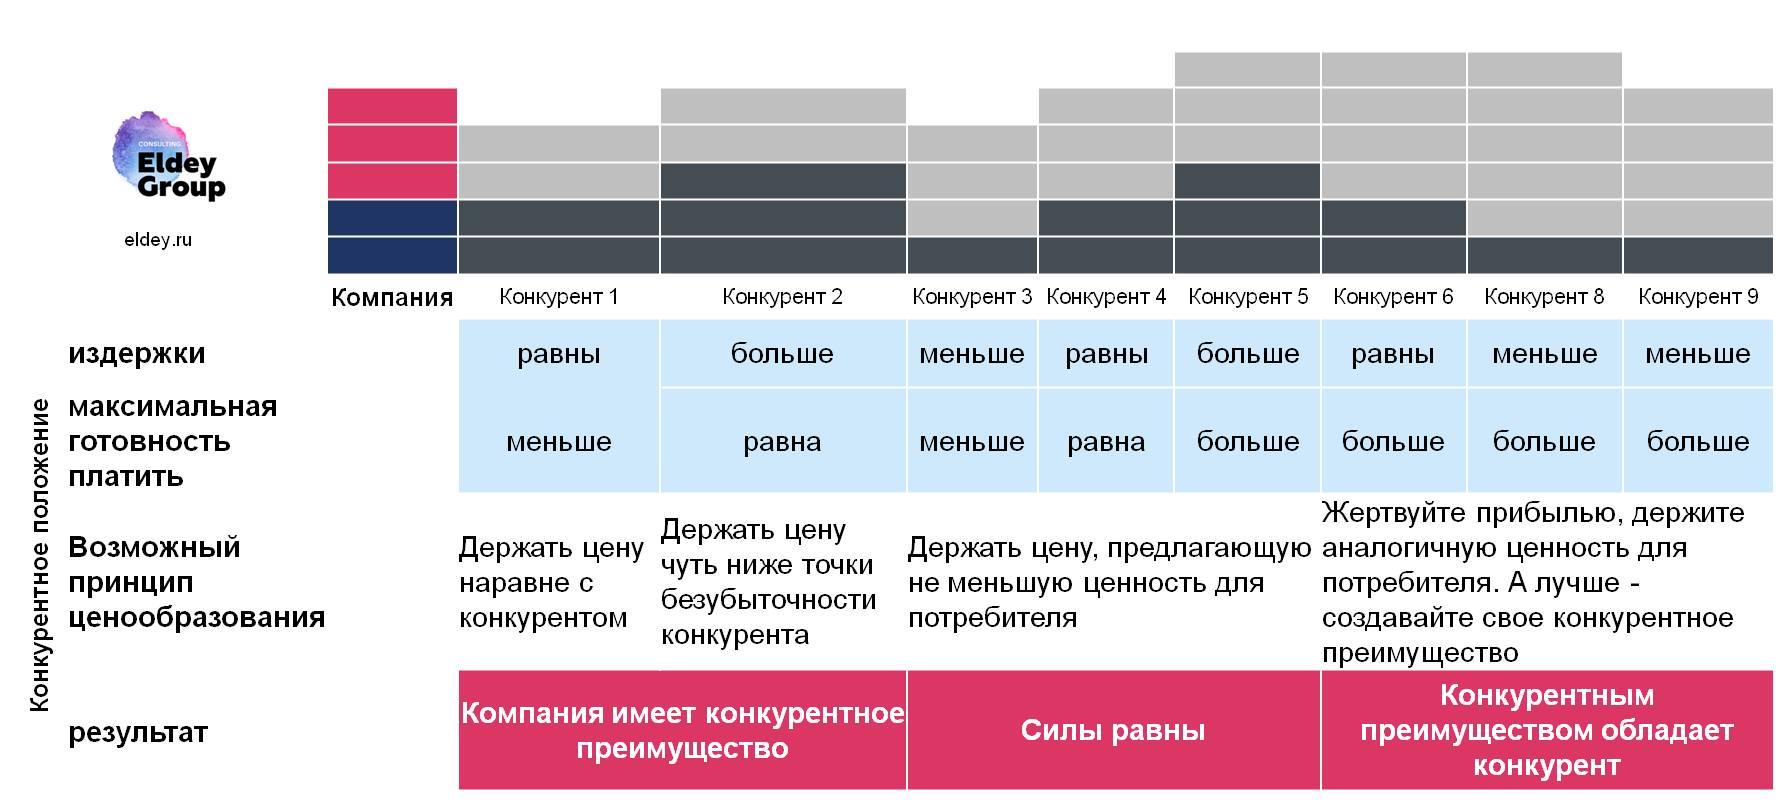 Маркетинговая стратегия: КФУ и конкурентная позиция компании eldey.ru